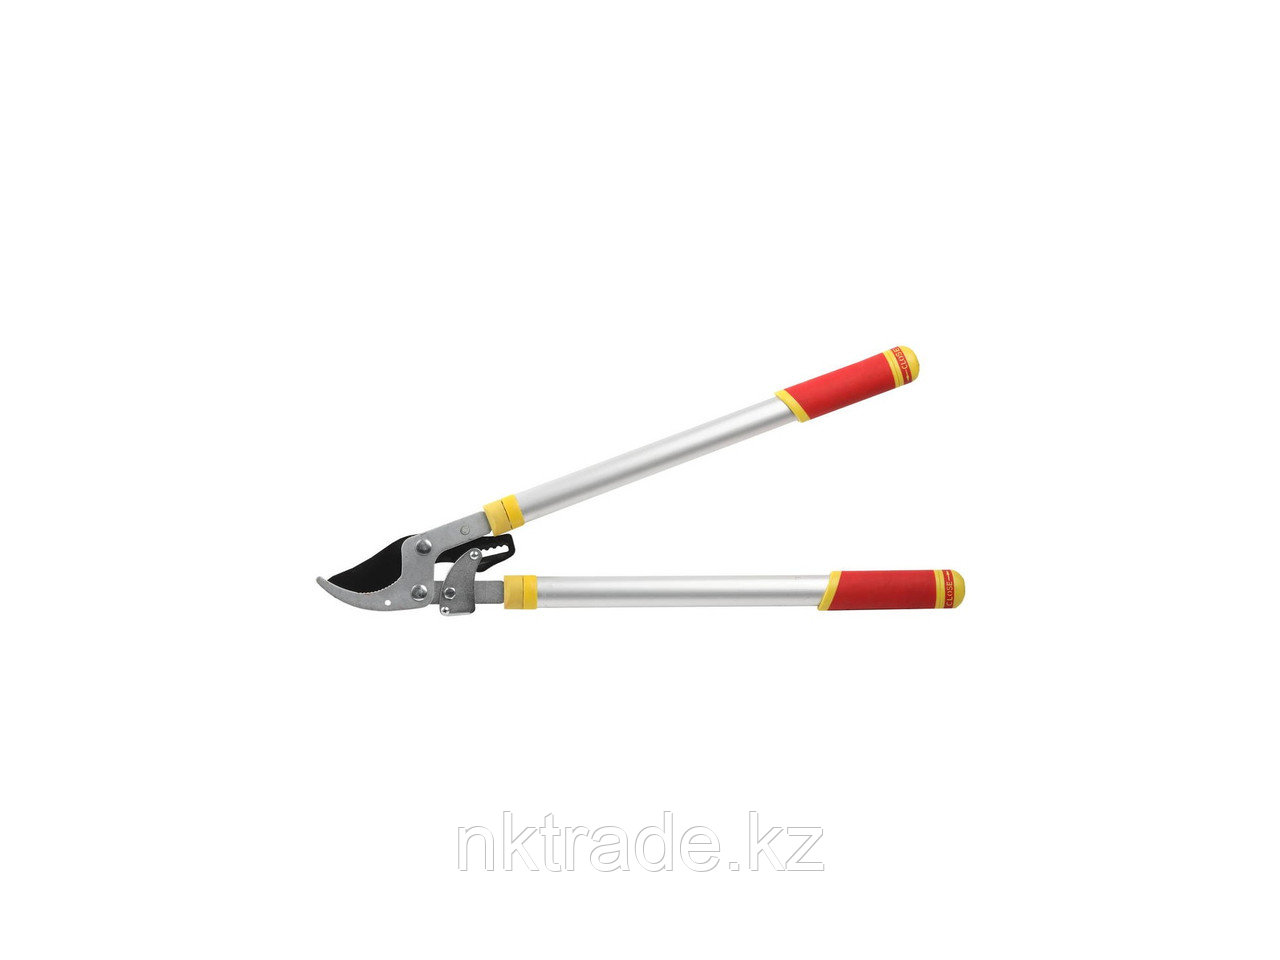 Сучкорез GRINDA с тефлоновым покрытием, алюминиевые телескопические ручки, двухрычажный храповый